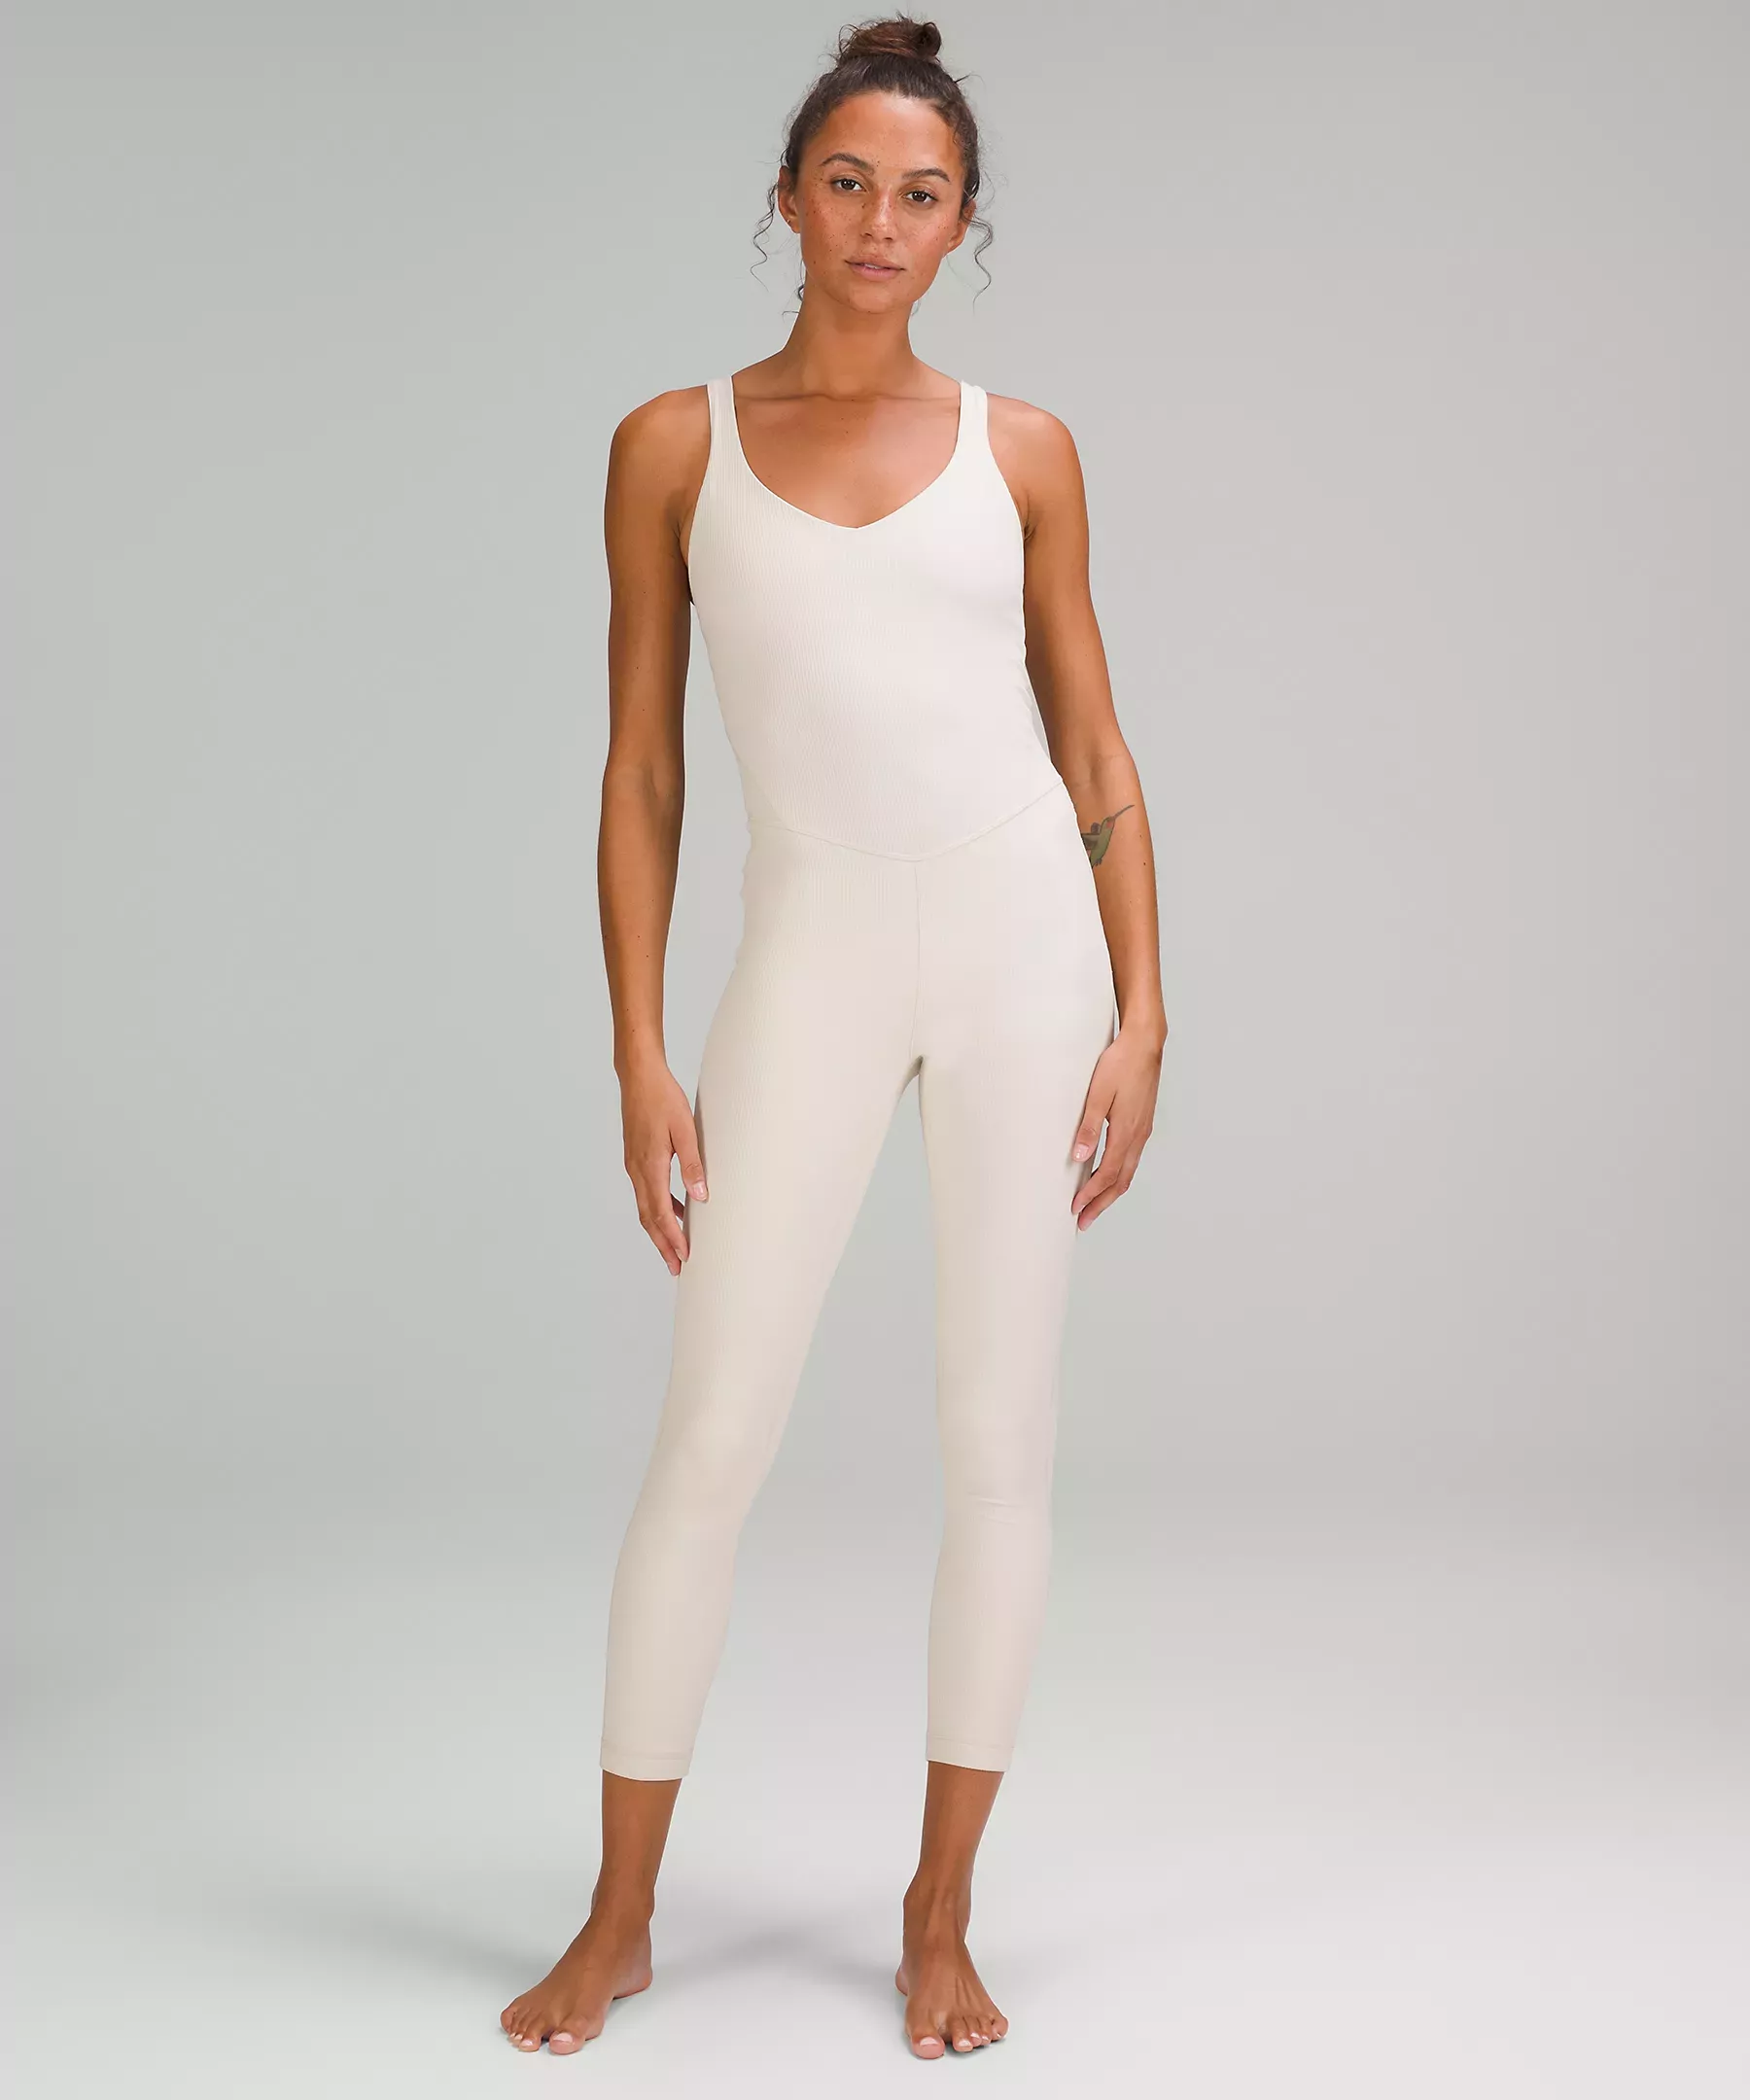 Lululemon Align™ Ribbed Bodysuit 25, Women's Dresses